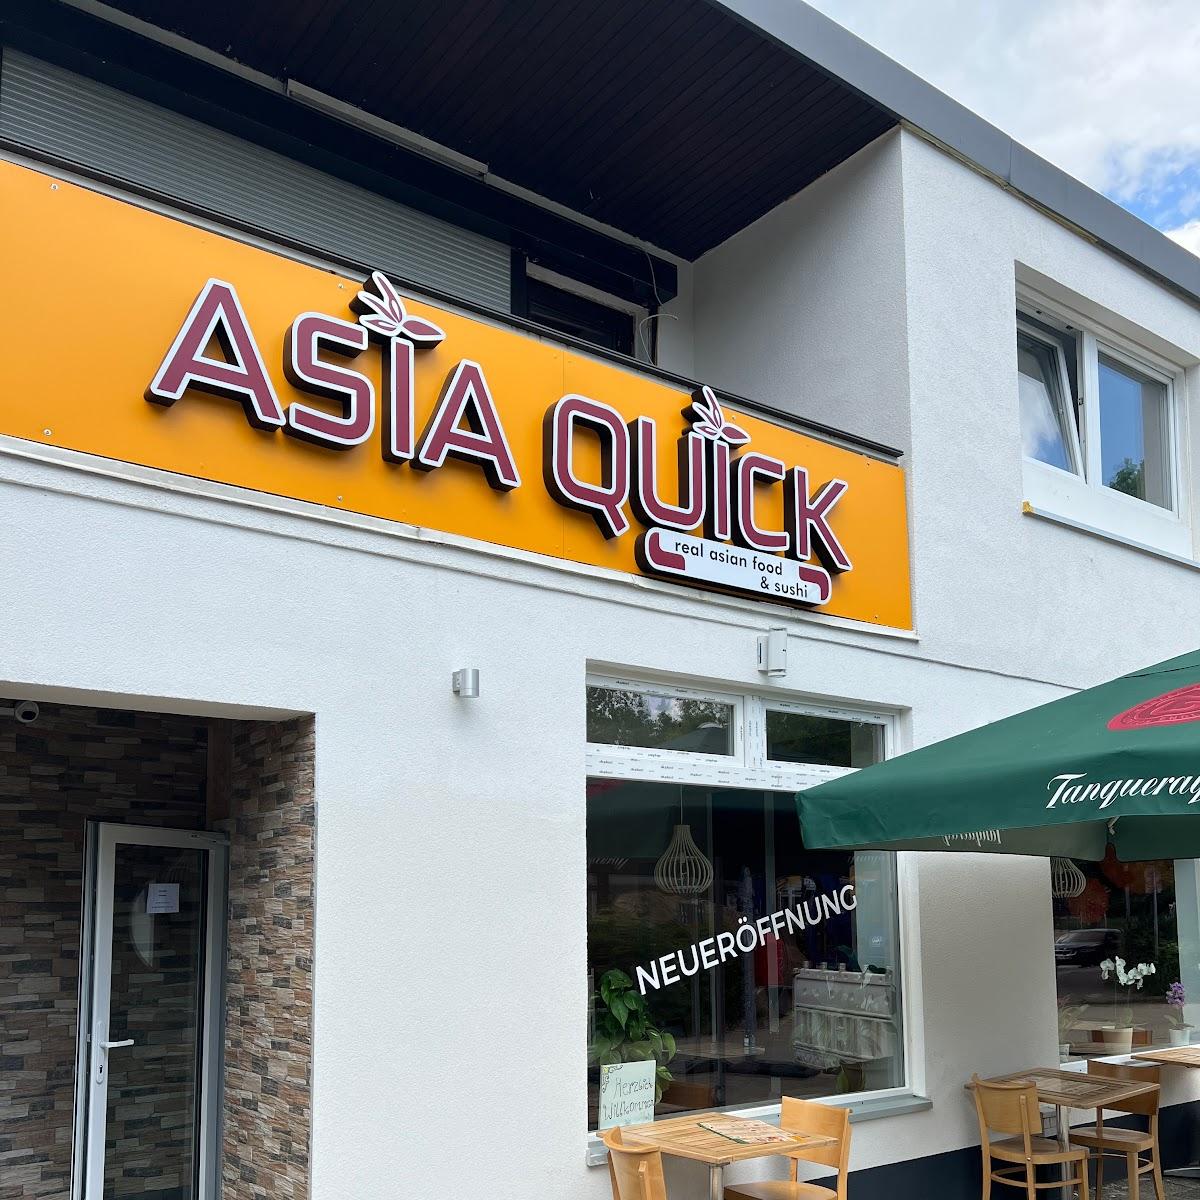 Asia Quick